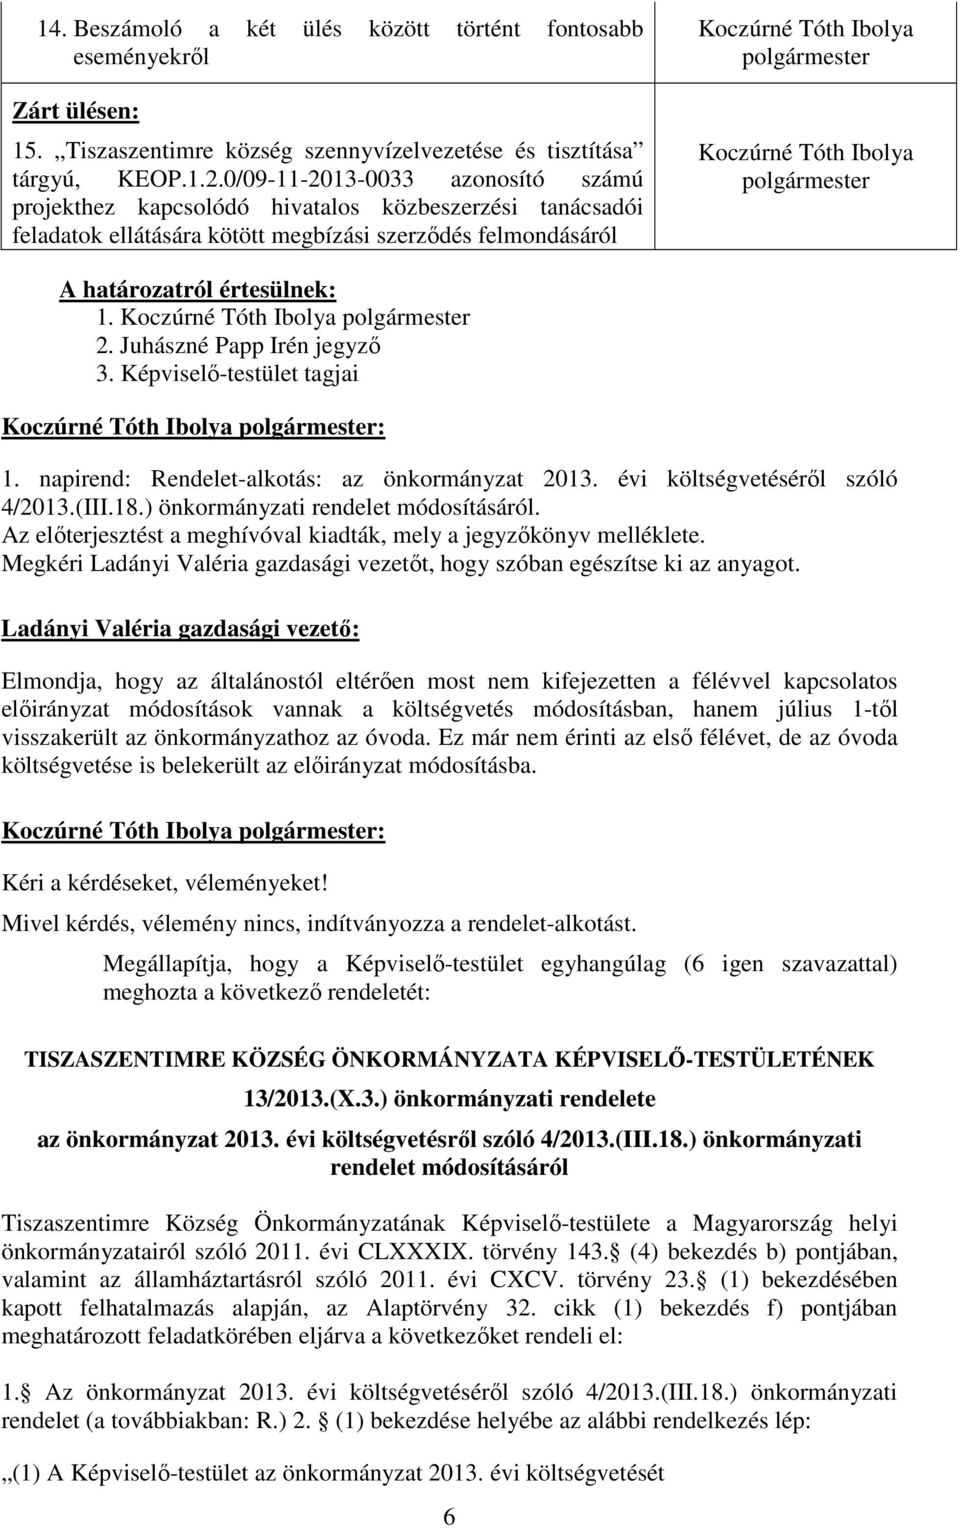 Képviselı-testület tagjai 1. napirend: Rendelet-alkotás: az önkormányzat 2013. évi költségvetésérıl szóló 4/2013.(III.18.) önkormányzati rendelet módosításáról.